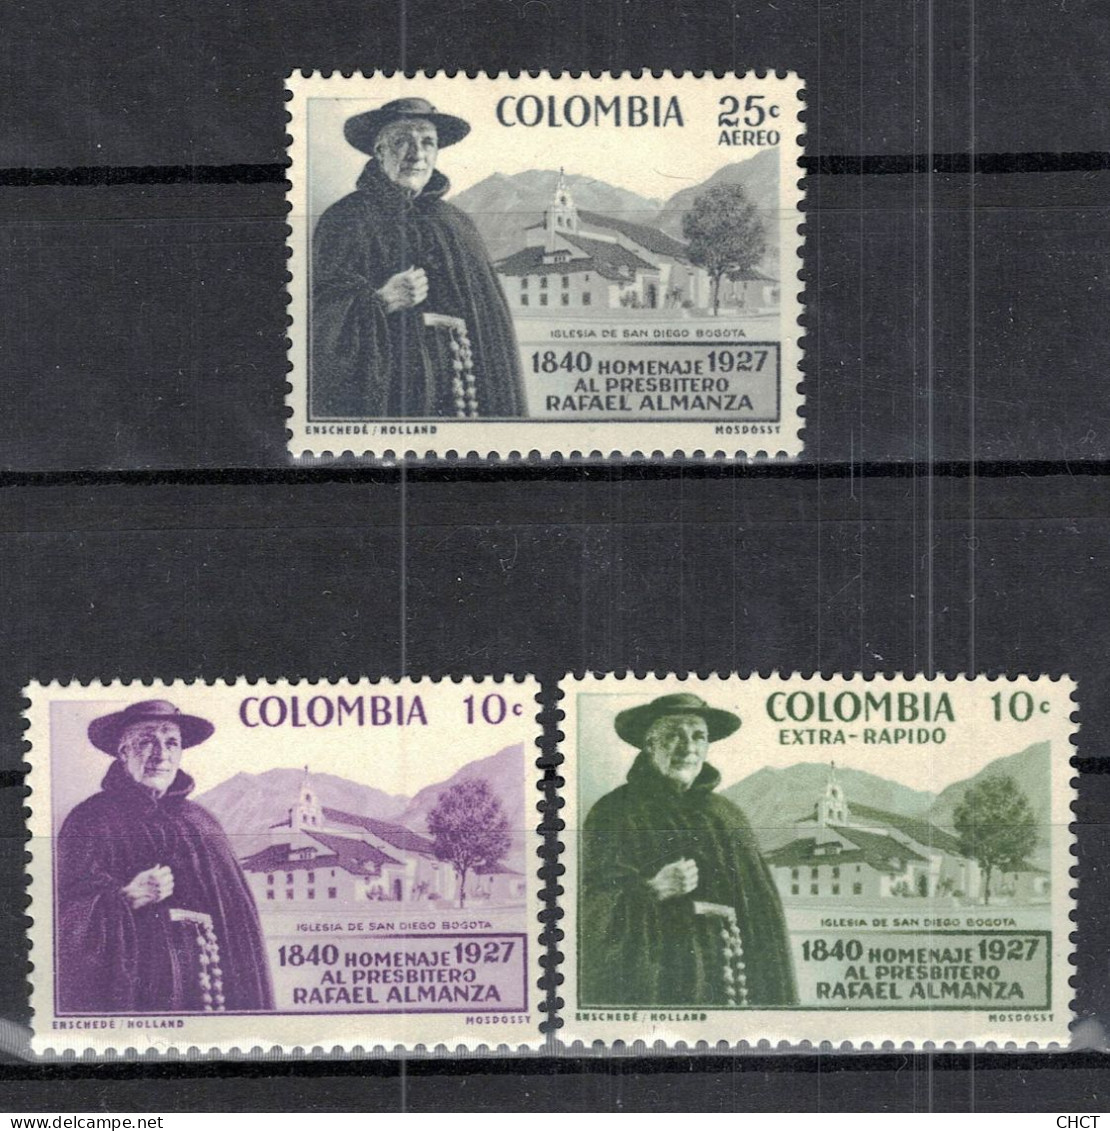 CHCT85 - Father Almanza Commemoration, Complete Series, MH, 1958, Colombia - Colombia